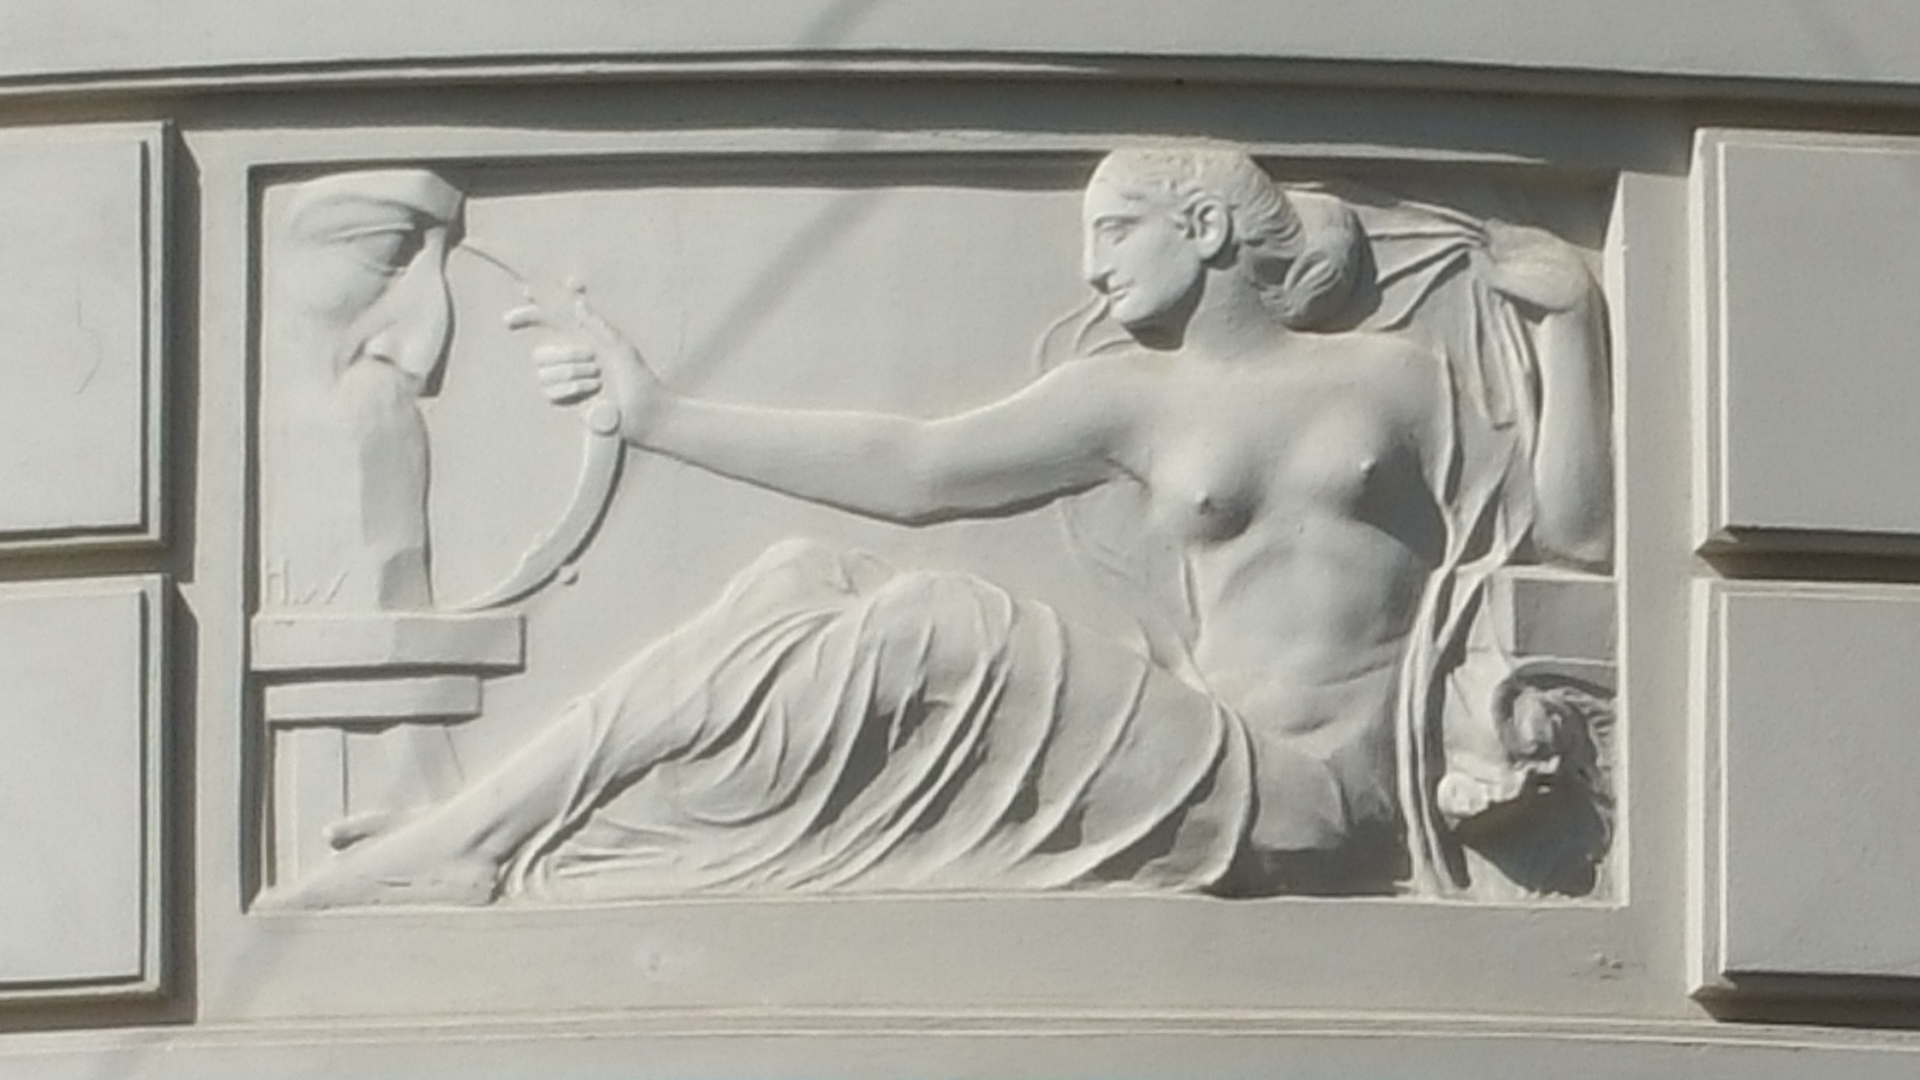 Fotostrecke Kunst 13: Relief an einer Hausfassade in Wien